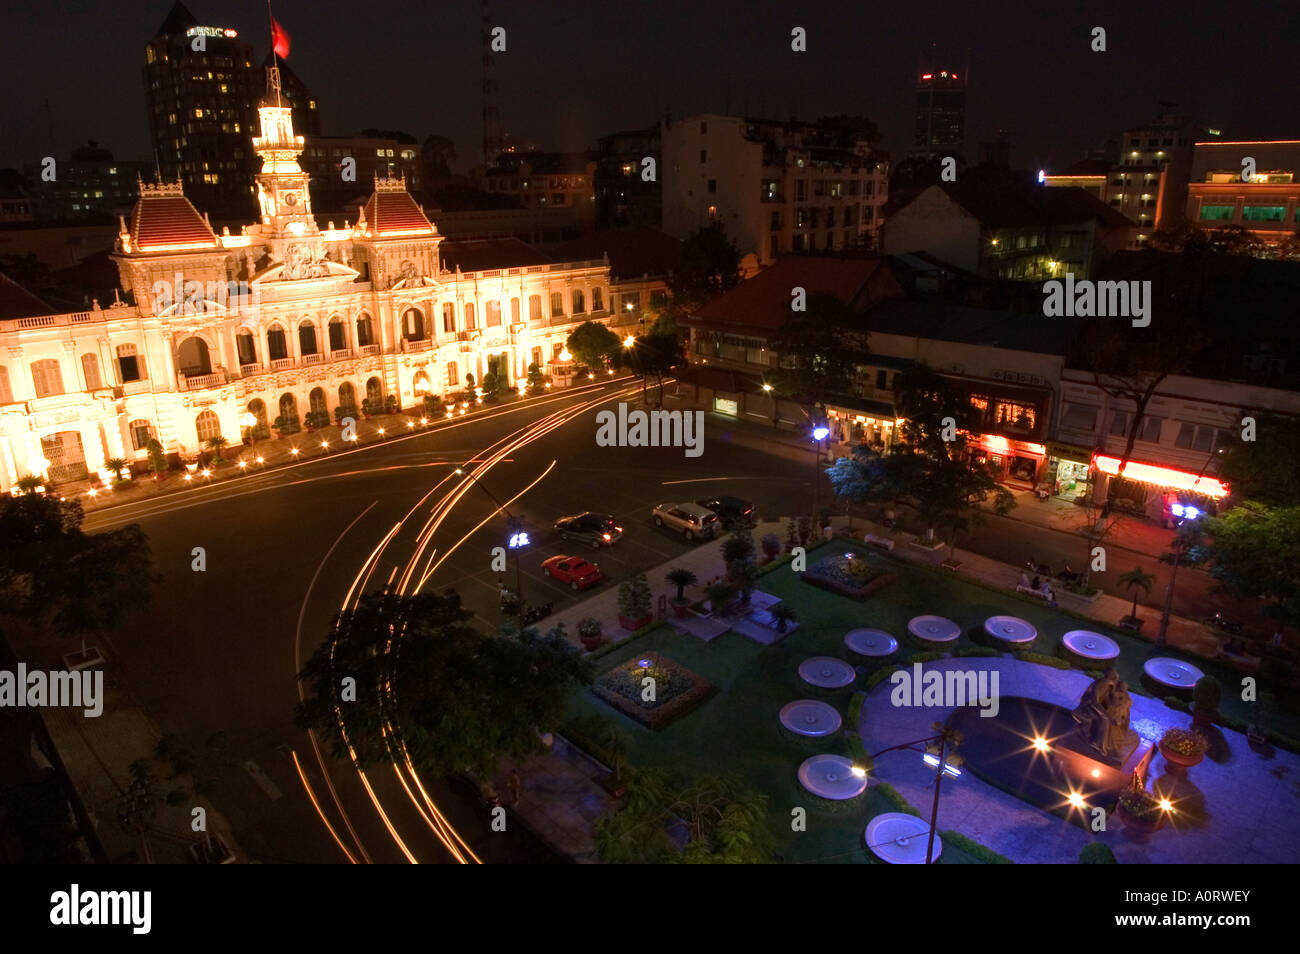 L'Hôtel de ville Ancien hôtel de ville Ho Chi Minh City Saigon Vietnam Asie Asie du sud-est Banque D'Images